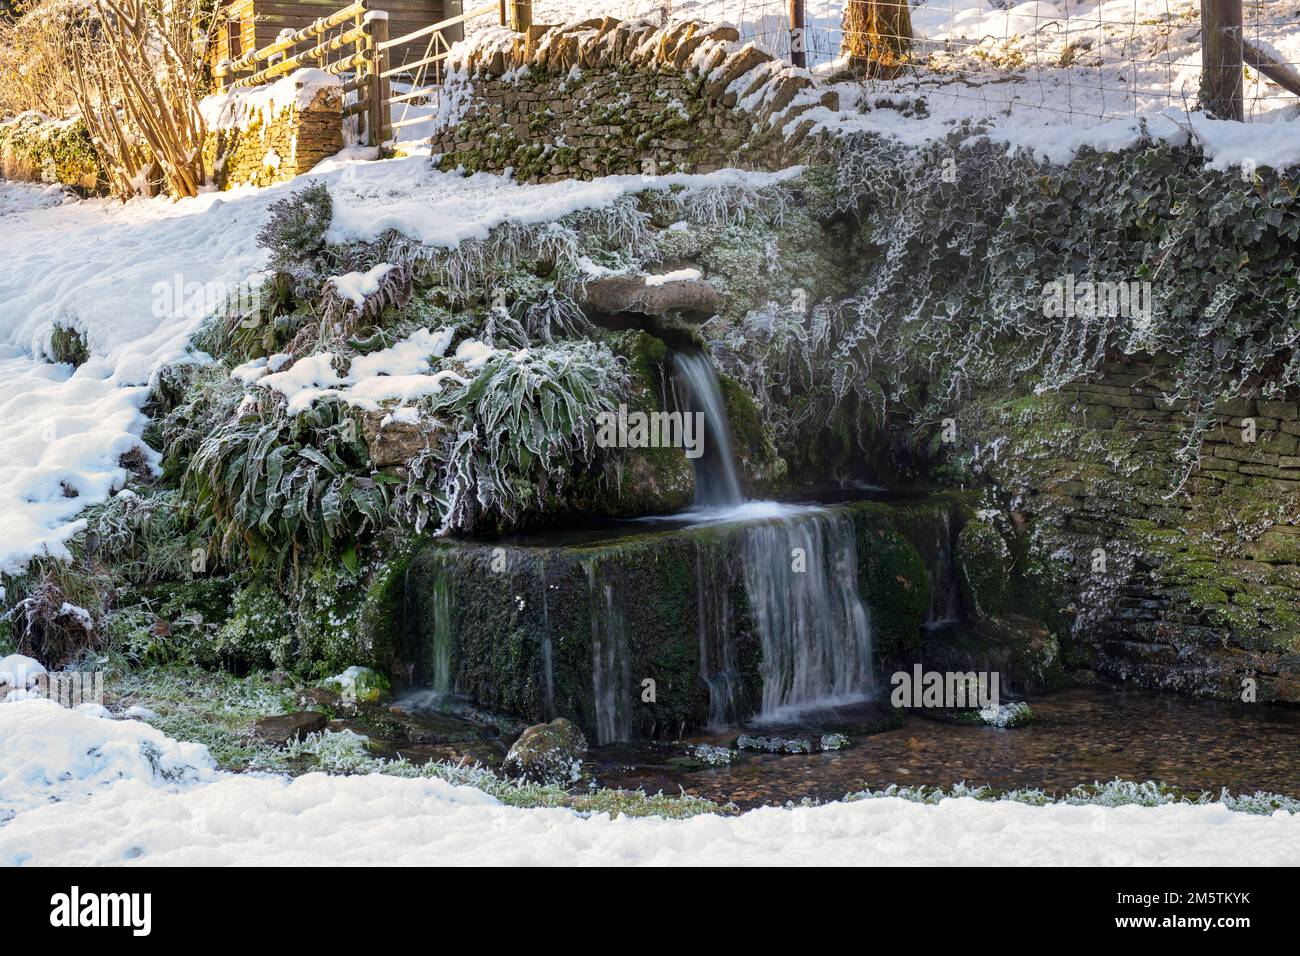 Neige d'hiver sur le bec d'eau de source de crocodile de pierre dans le village de cotswold de Compton Abdale. Cotswolds, Gloucestershire, Angleterre Banque D'Images